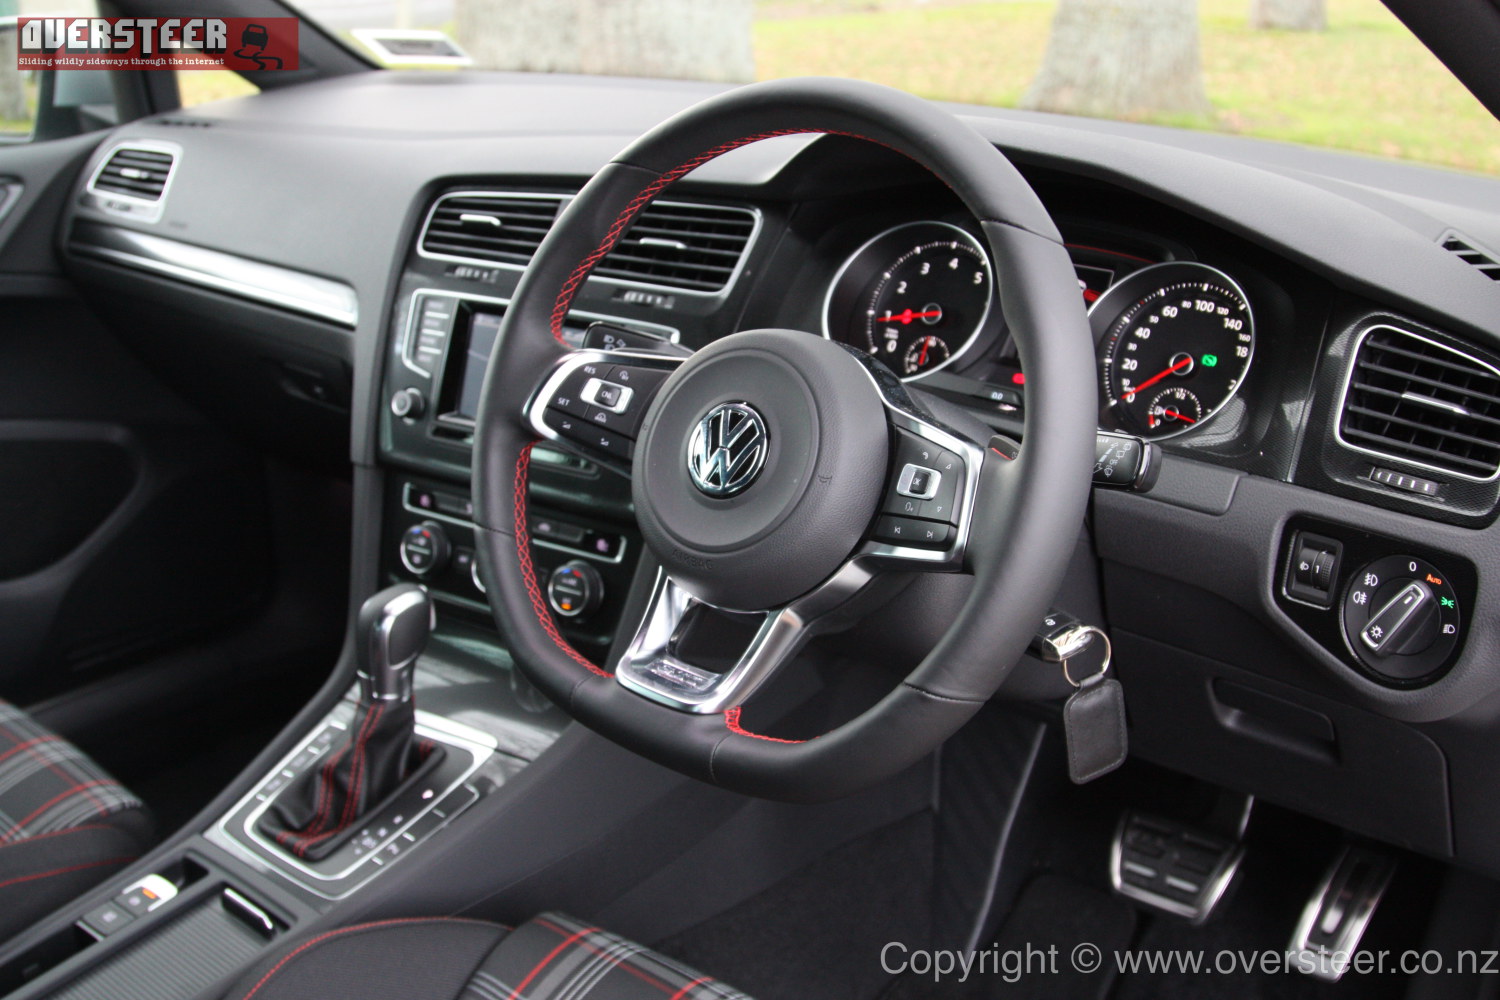 FIRST DRIVE: Volkswagen Golf GTI – OVERSTEER